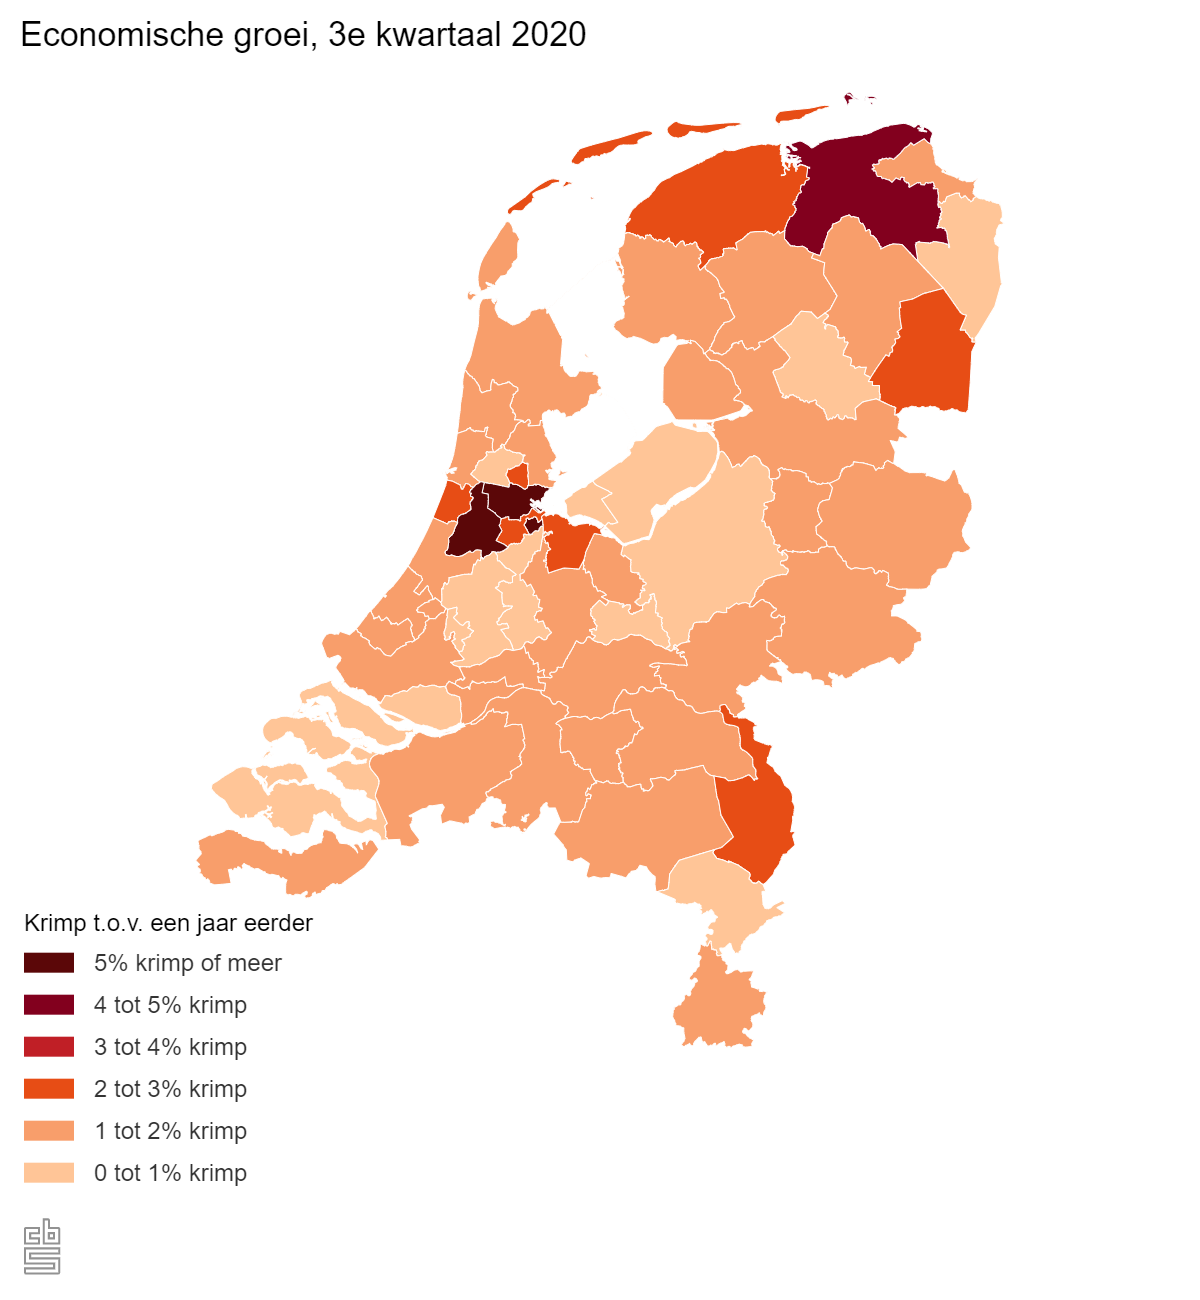 De economische groei, het derde kwartaal 2020. Heel Nederland heeft te maken met een krimp t.o.v. een jaar eerder. De krimp is in dit kwartaal een stuk lager uitgevallen van 0% tot 5%. Hiernaast zijn de omgeving Groningen en de metropoolregio Amsterdam twee uitschieters, met een krimp van 5% of meer. 